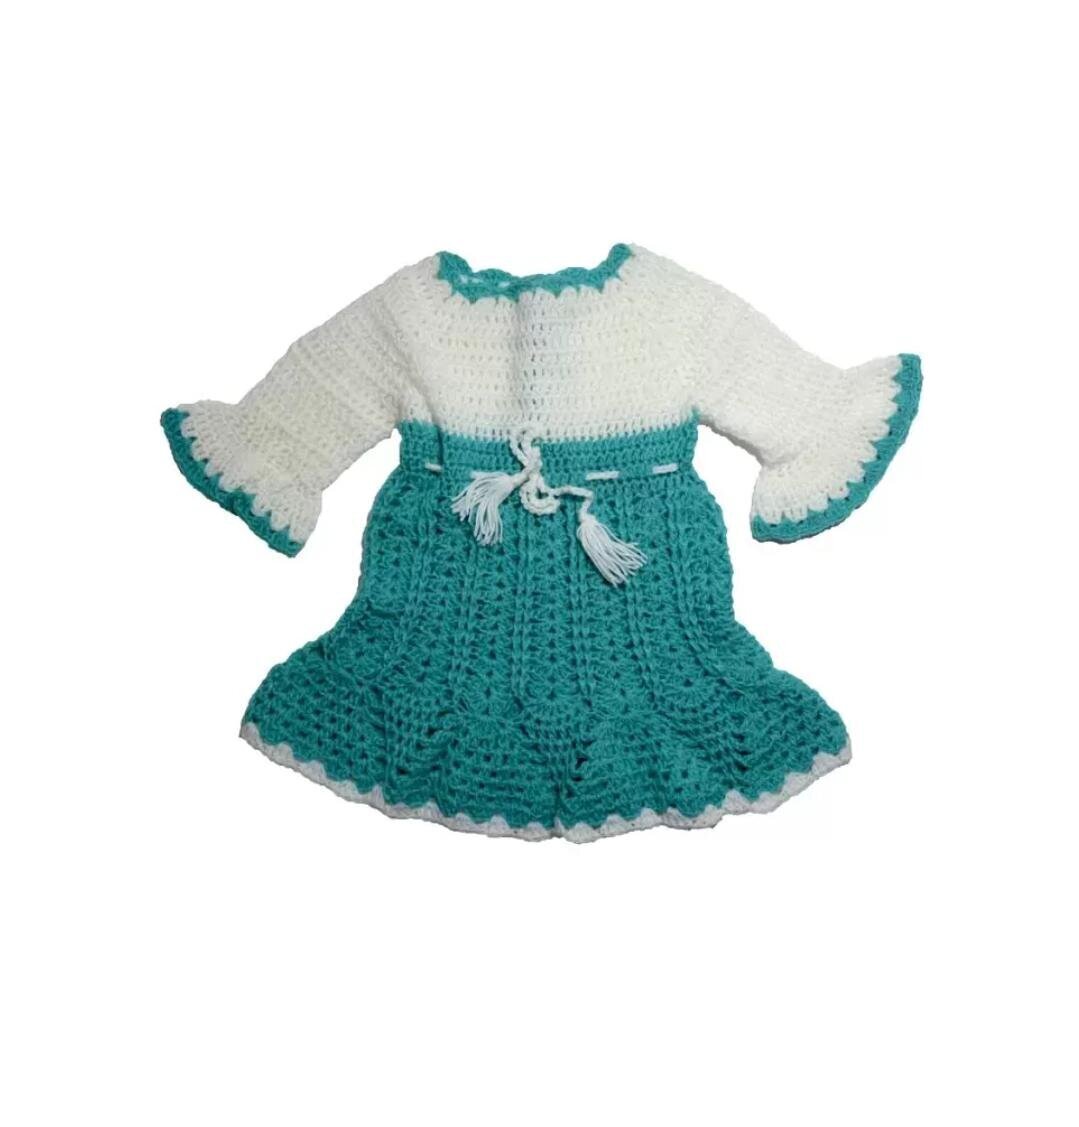 Charming Nilla Knitted Baby Dress FREE Knitting Pattern